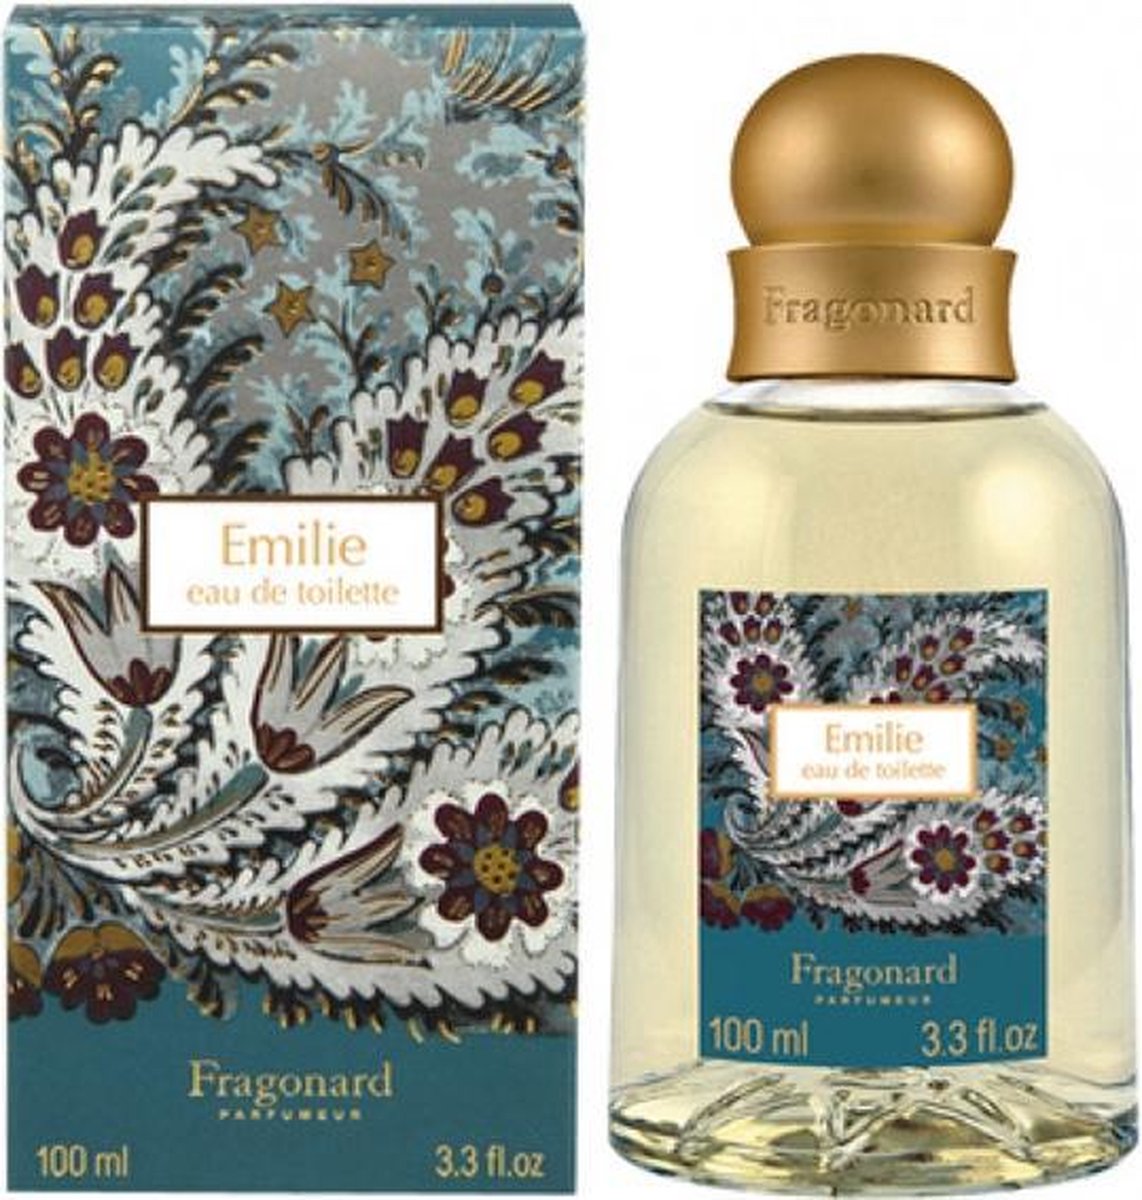 Fragonard Fragrance Emilie Eau de Toilette 100ml